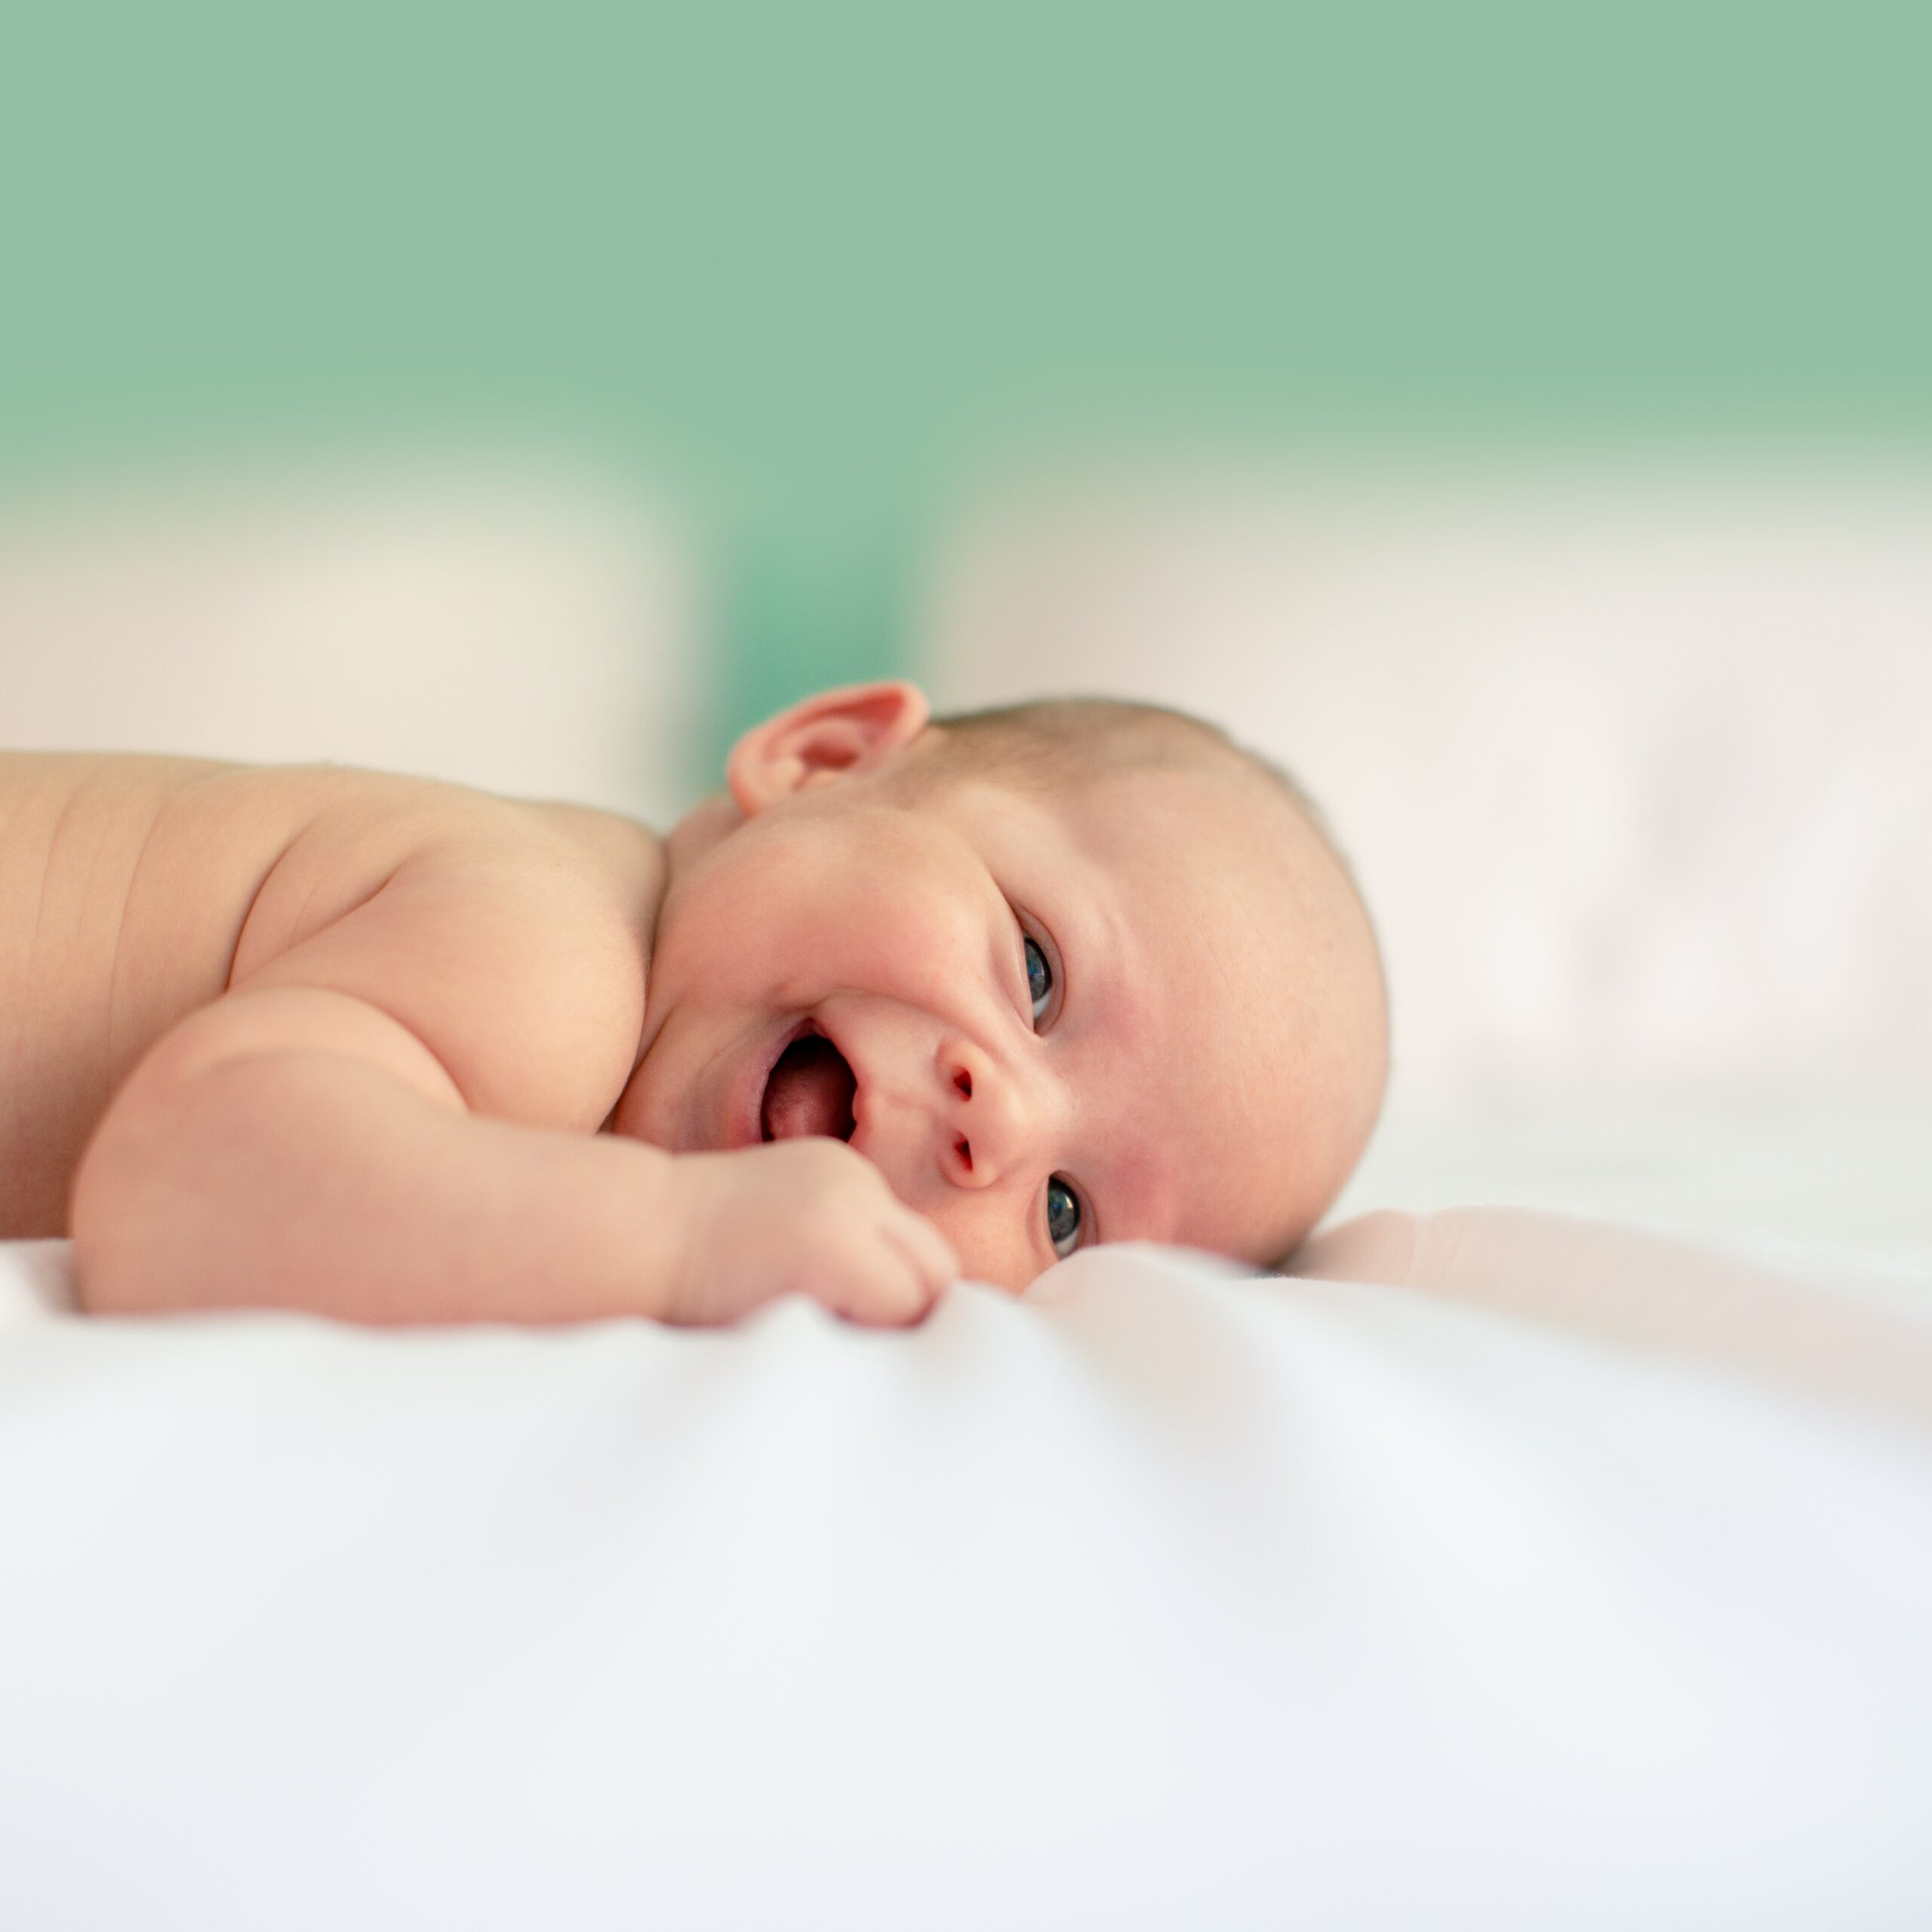 Vaasan Setlementin palvelut lapsille ja perheille. Pieni vauva makaa vatsallaan valkoisella alustalla ja nauraa. Setlementin Esikot-ryhmä on tarkoitettu perhettä suunnitteleville, vauvaa odottaville tai ensimmäisen vauvan jo saaneille.